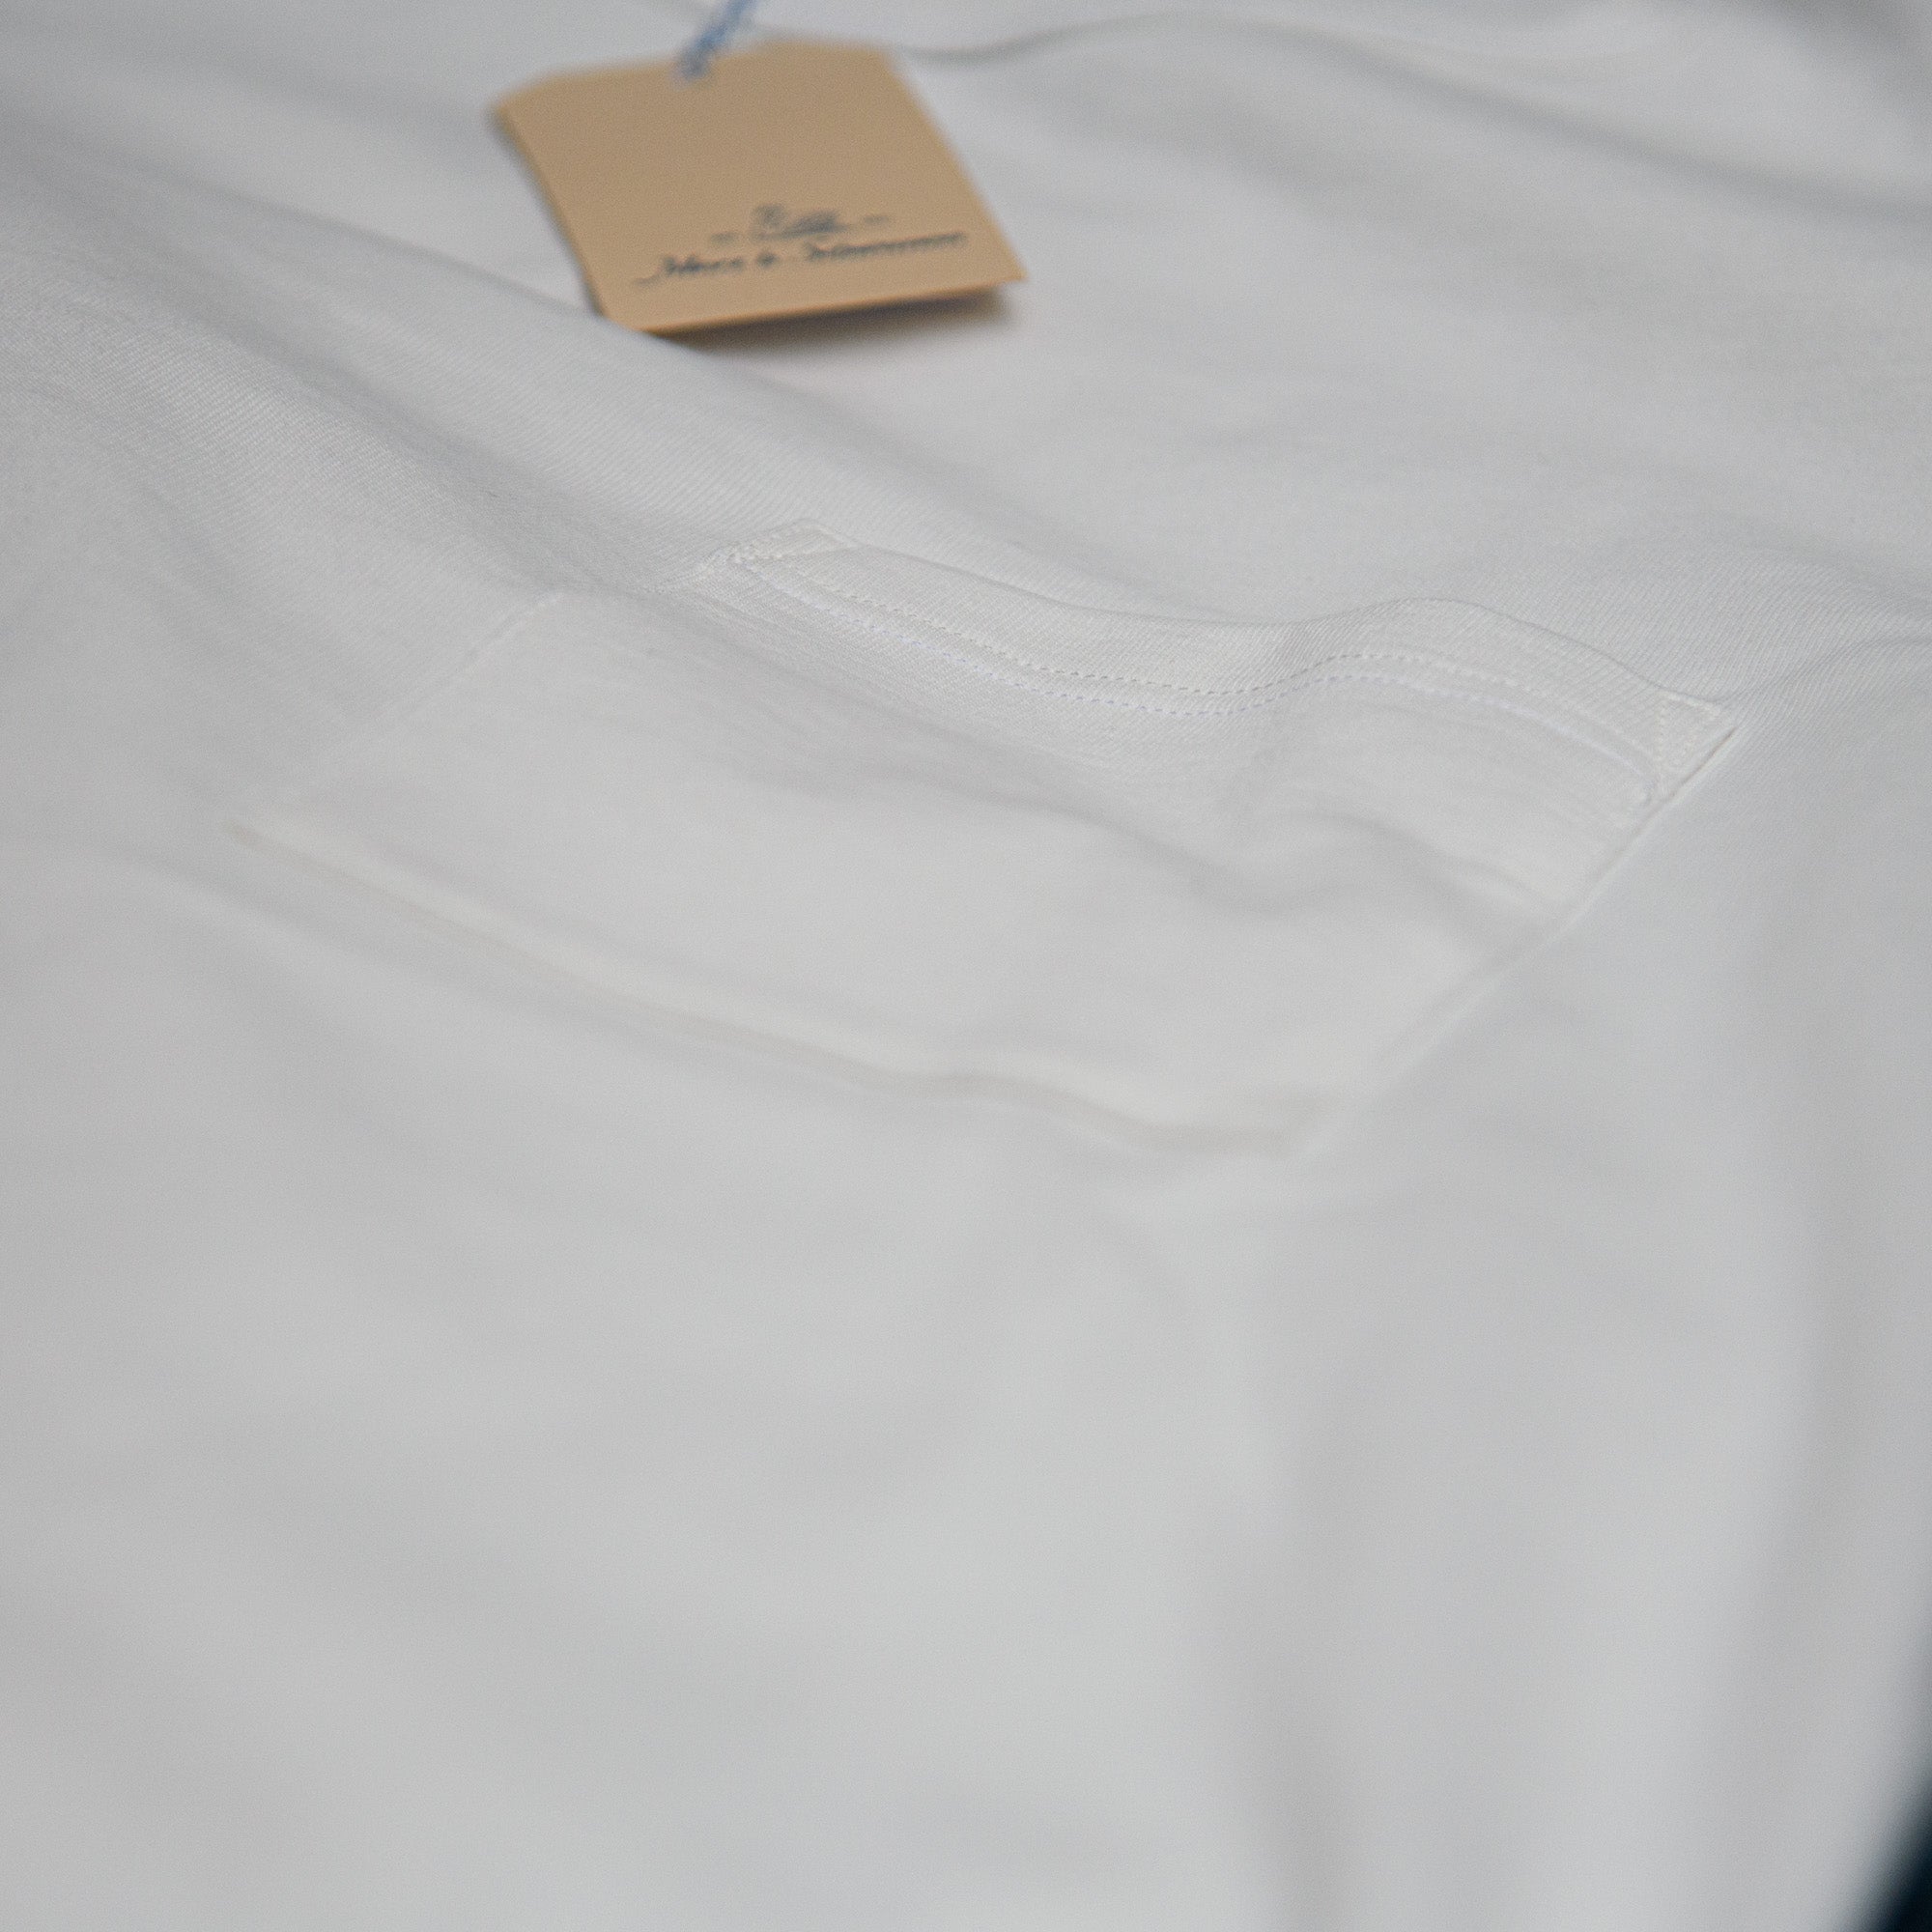 Merz T-Shirt (Europe) Store Limited 215 Exclusive – Edition Schwanen Pocket White b /